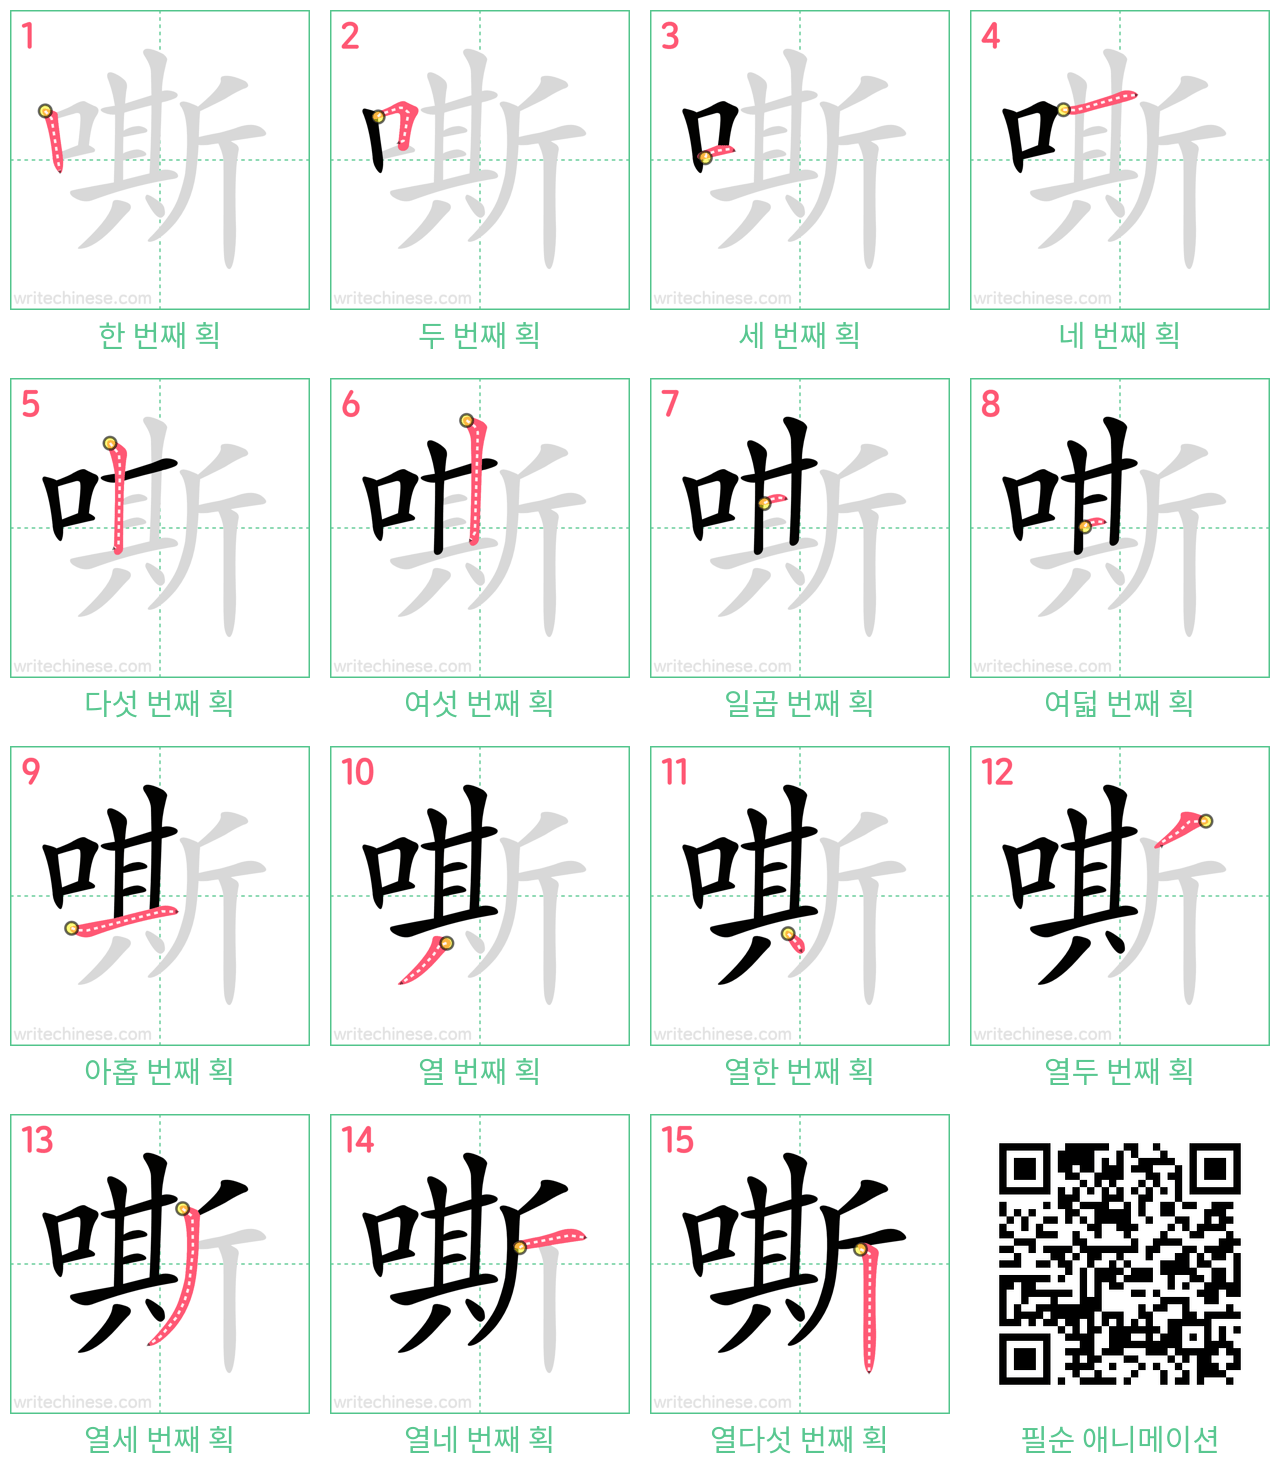 嘶 step-by-step stroke order diagrams